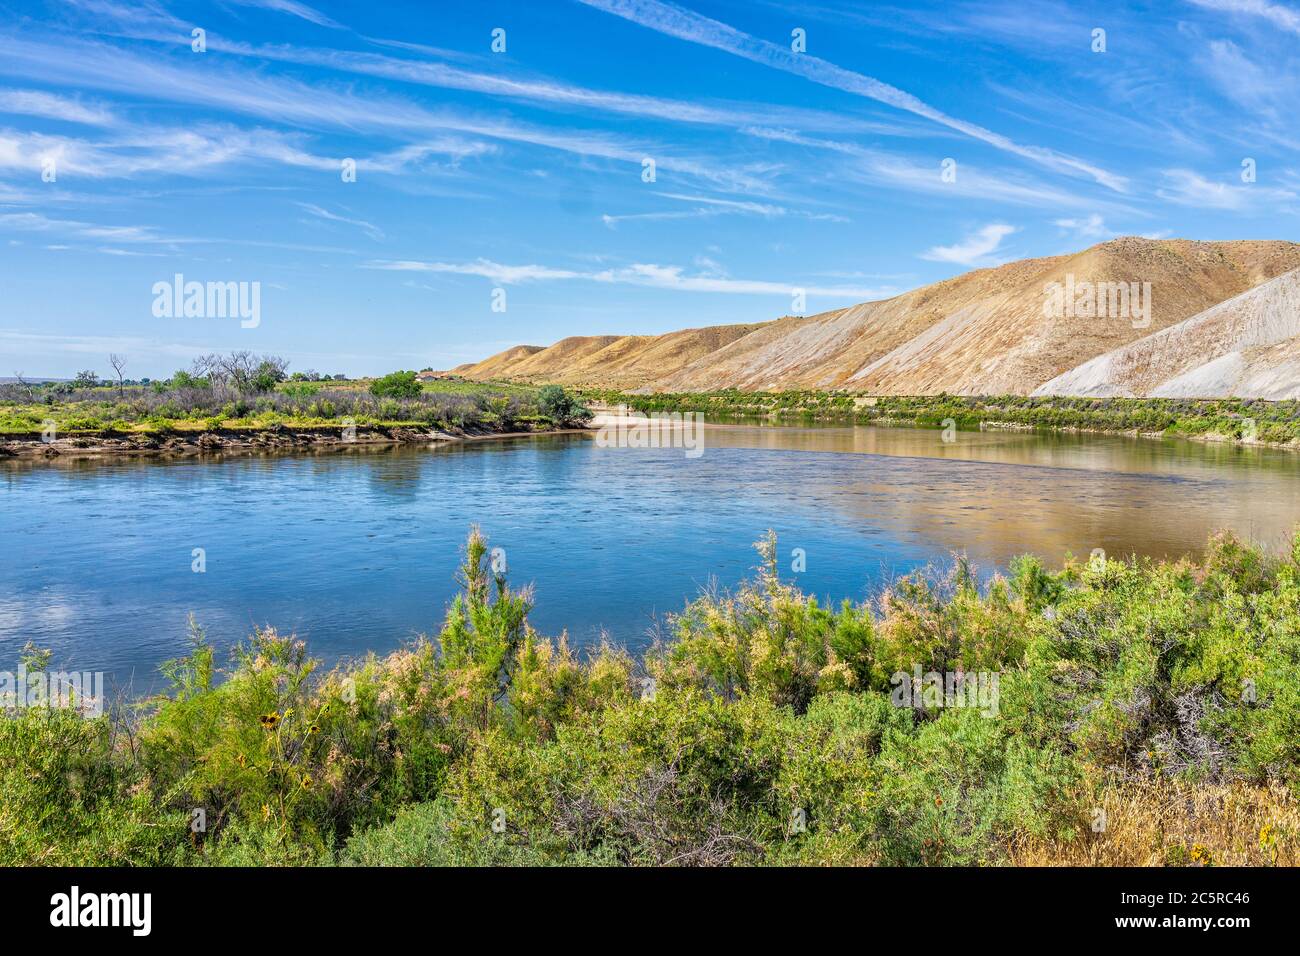 Vista del fiume Green nello Utah Dinosaur National Monument Park con riflessi nel paesaggio delle piante verdi e dell'acqua Foto Stock